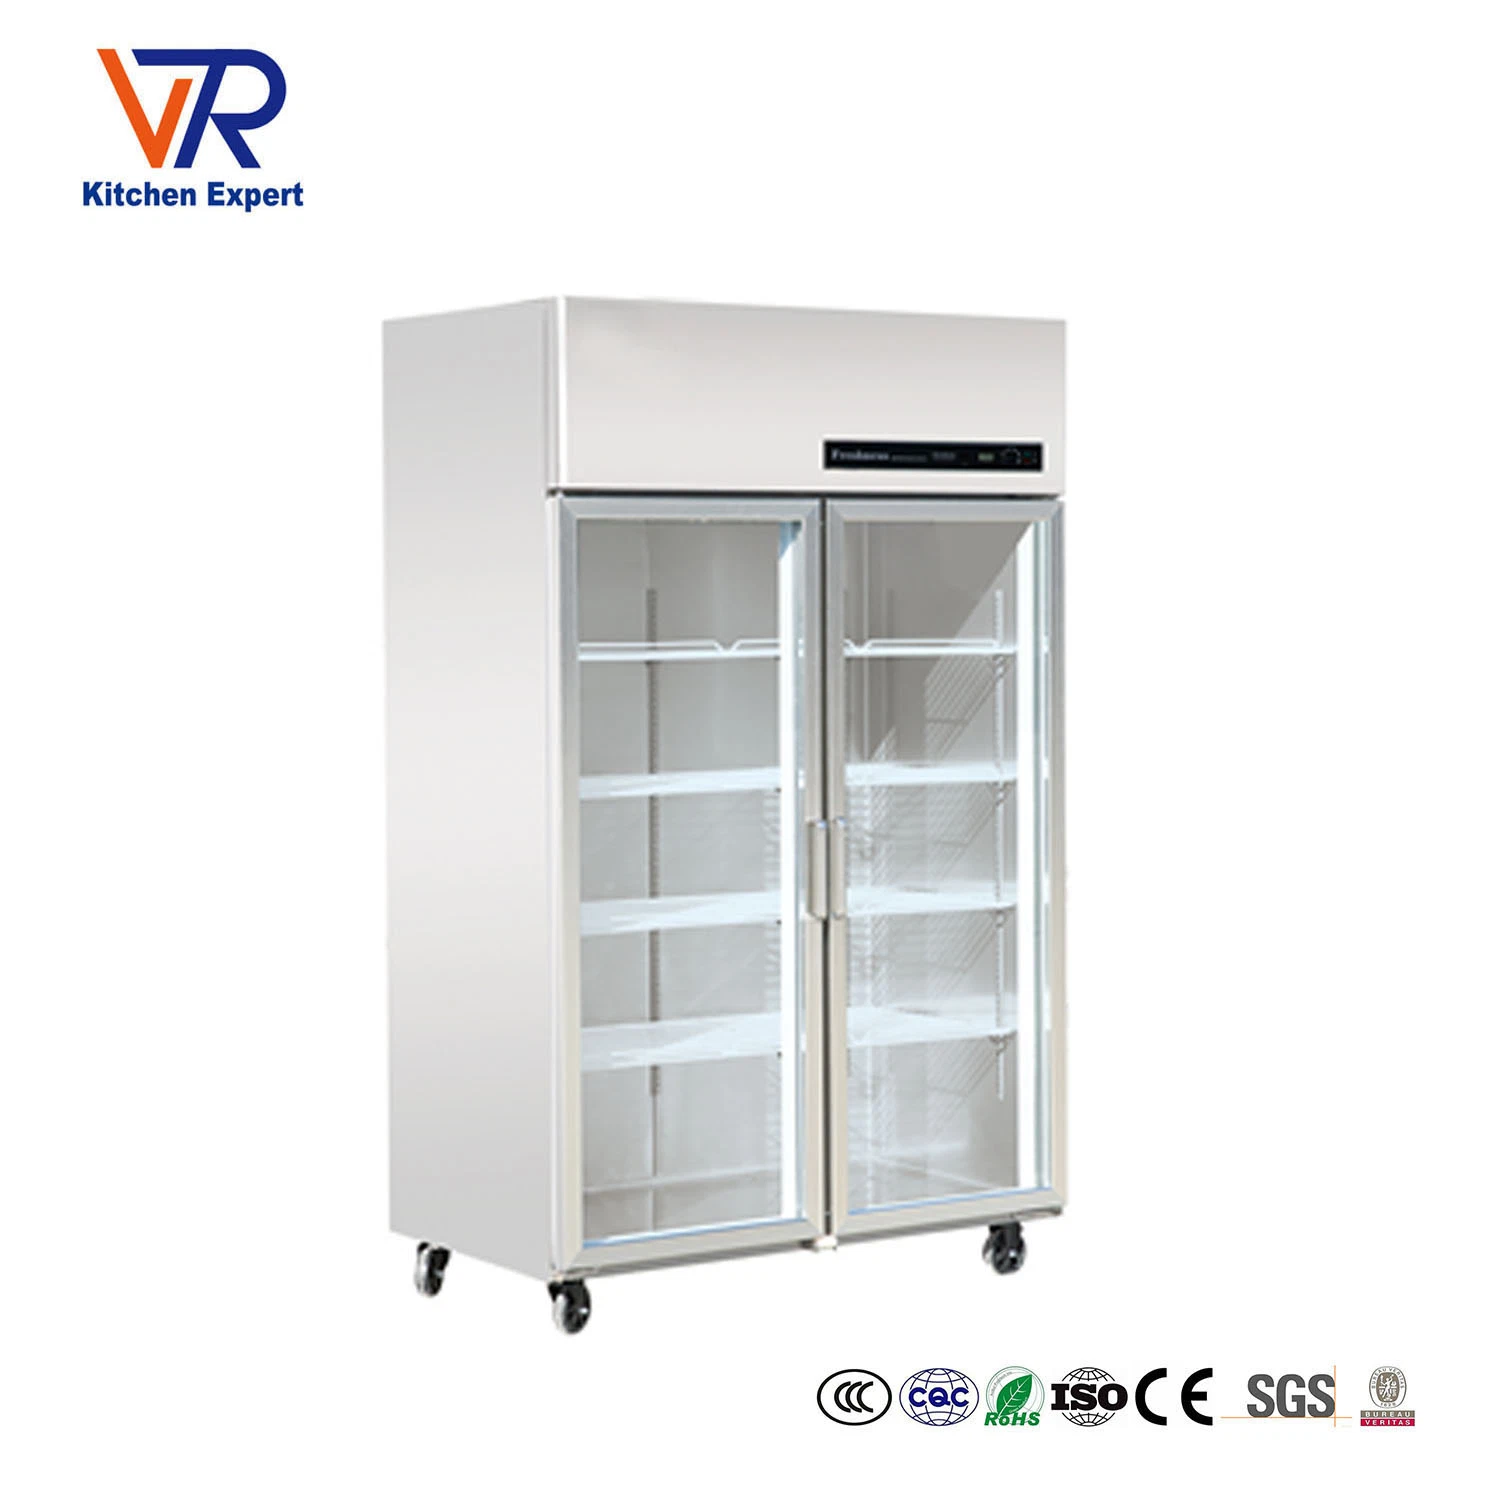 Commercial Restaurant Equipmet Refrigerator&Freezer Stainless Steel Upright Deep Freezer Refrigerator National Fridge with Glass Door